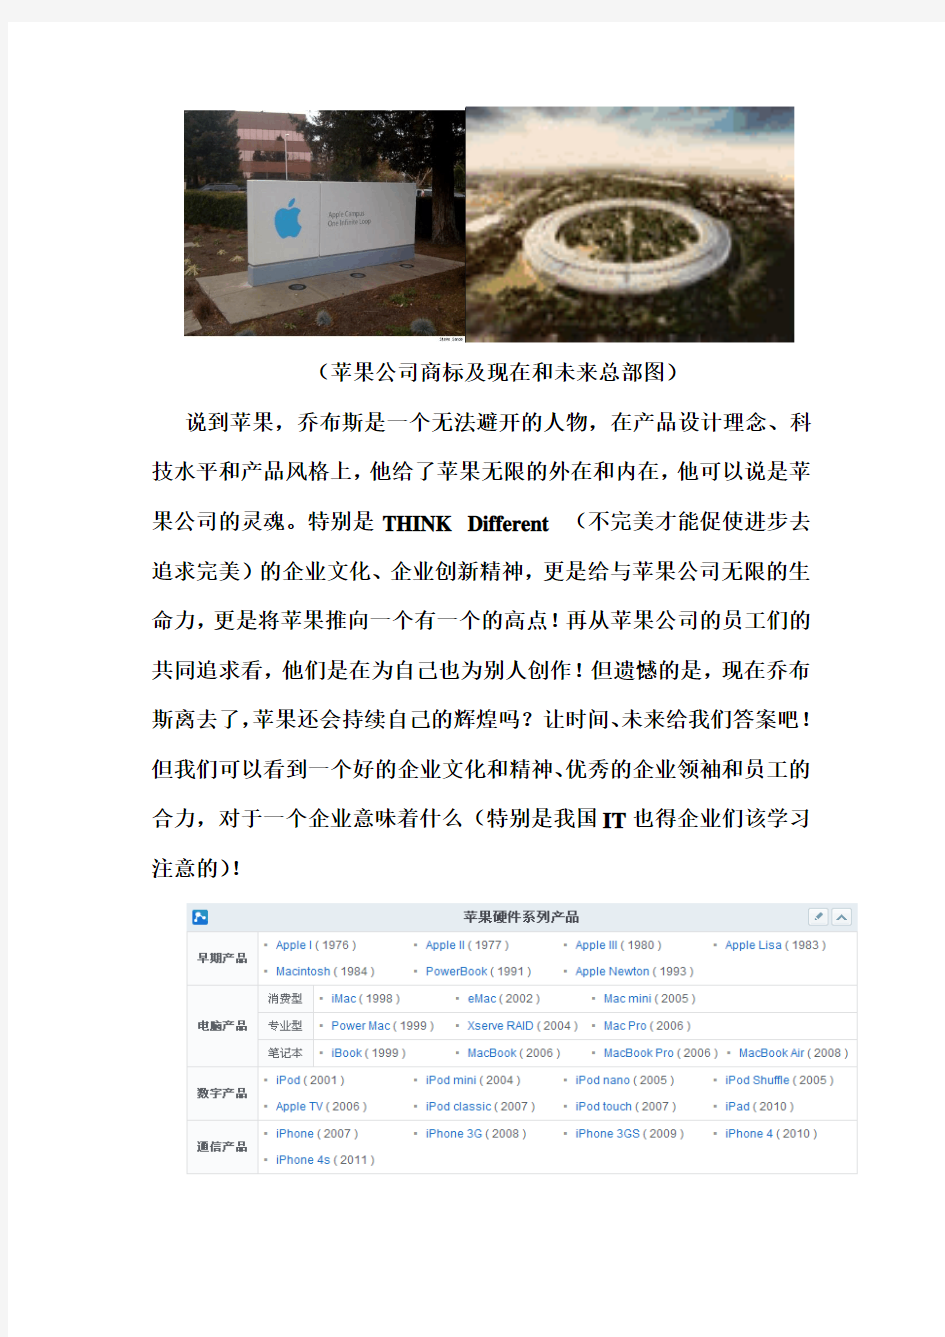 苹果在中国市场的分析报告